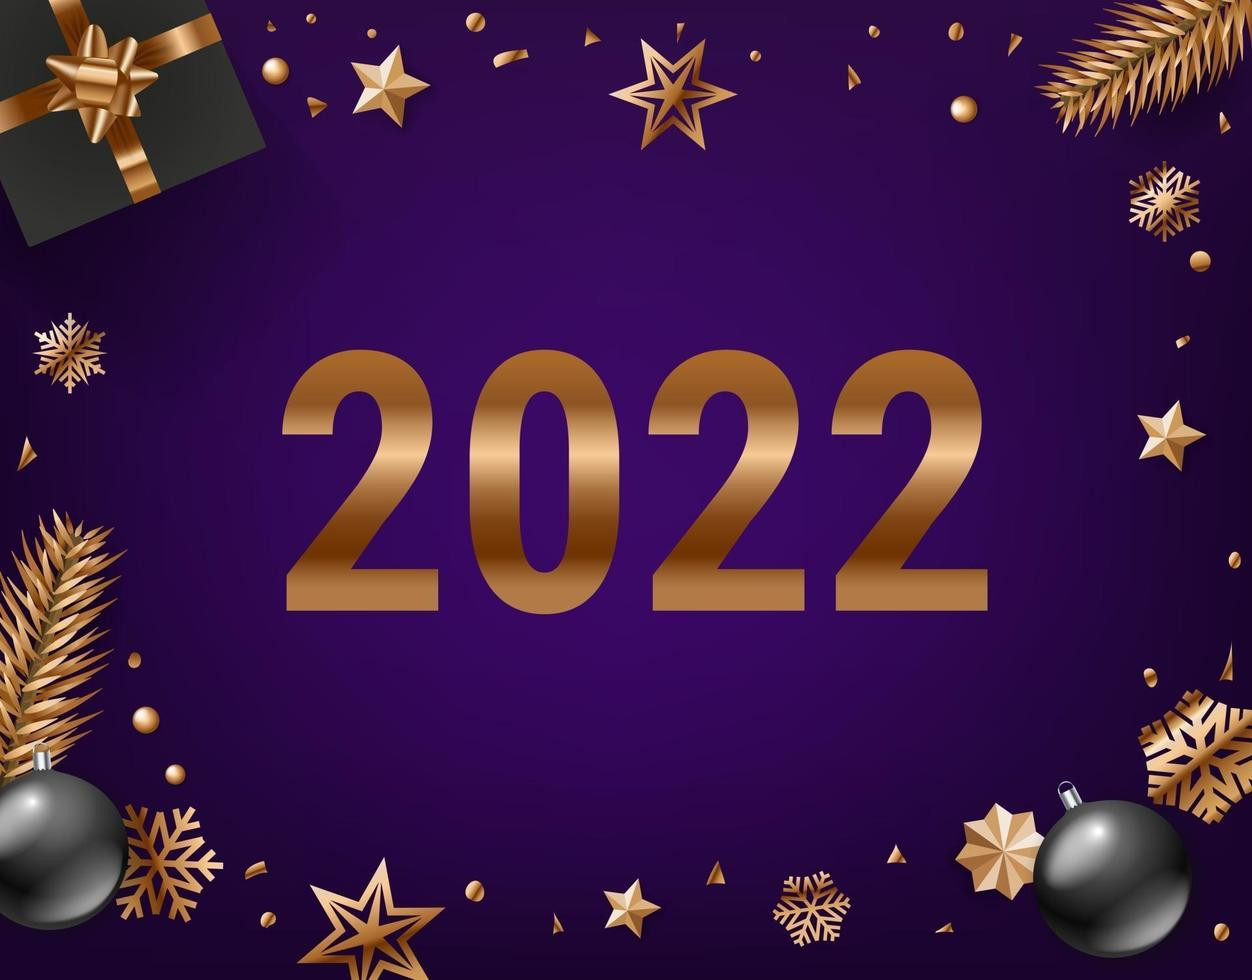 Happy new 2022 year concept 2490789 Vector Art at Vecteezy